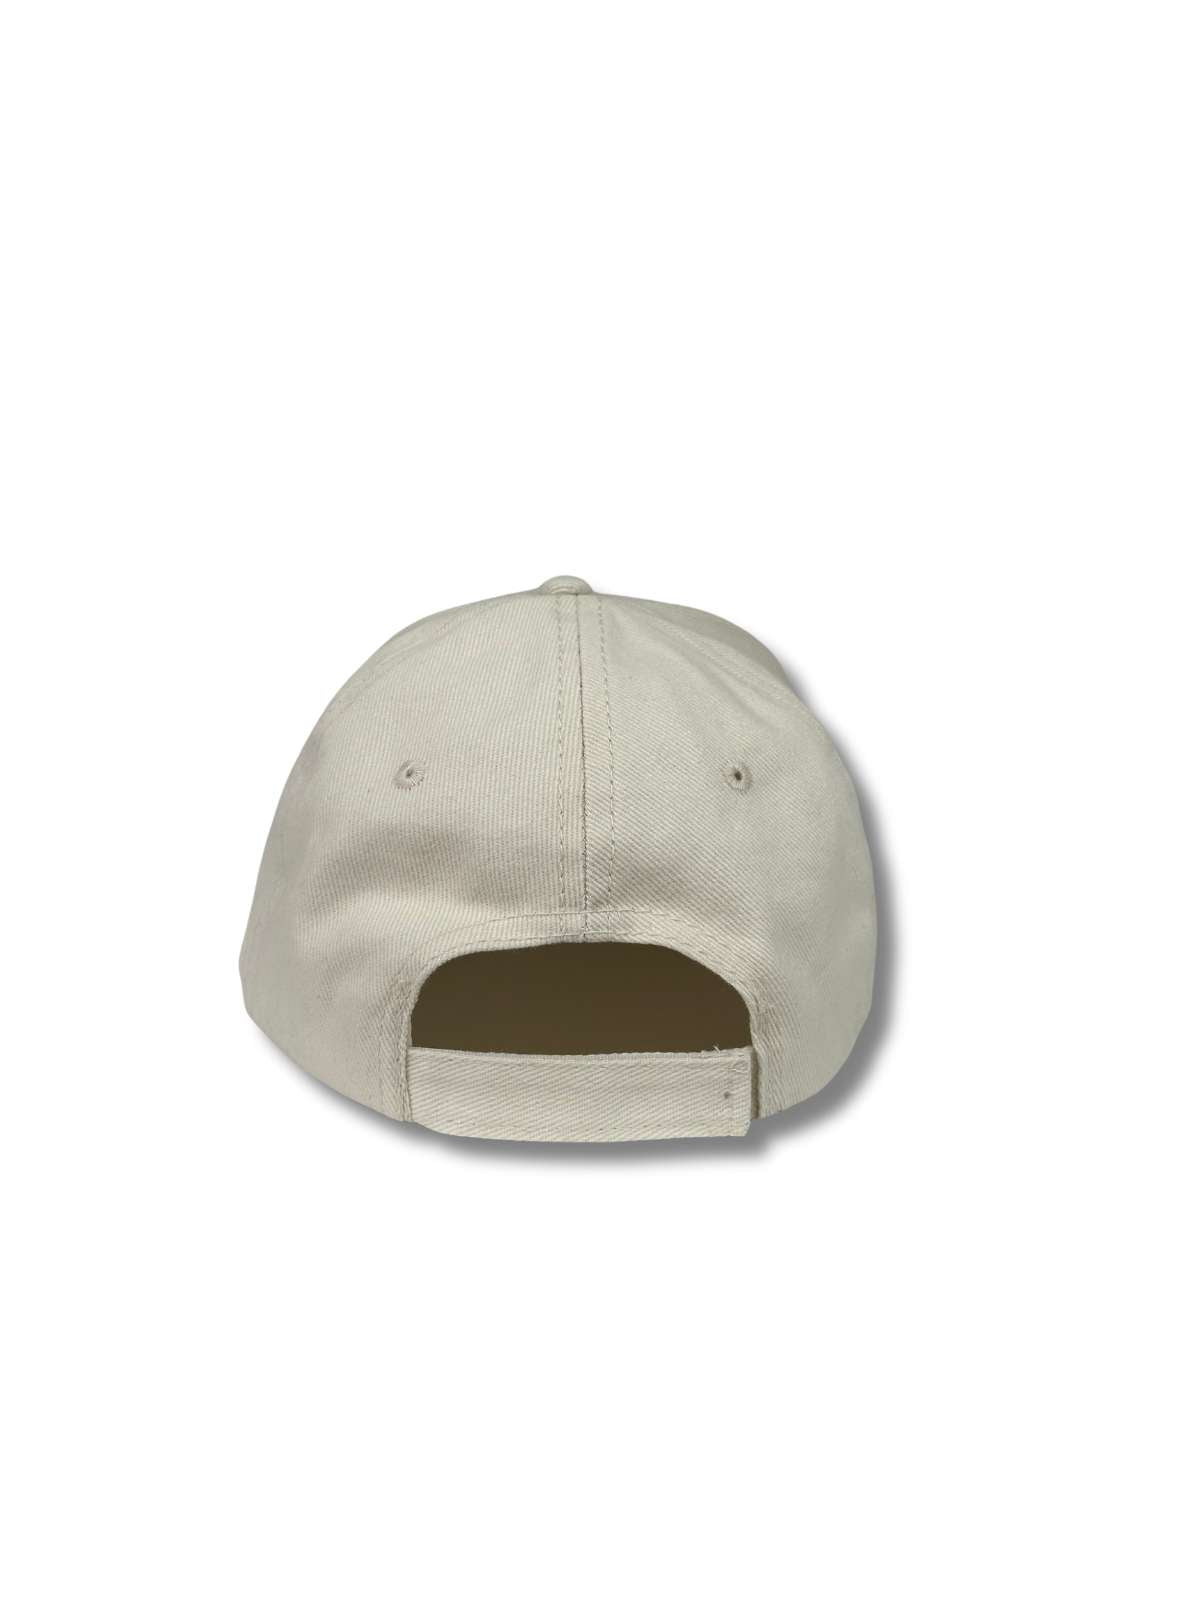 Balmoral Unisex Cotton Cap - Cream